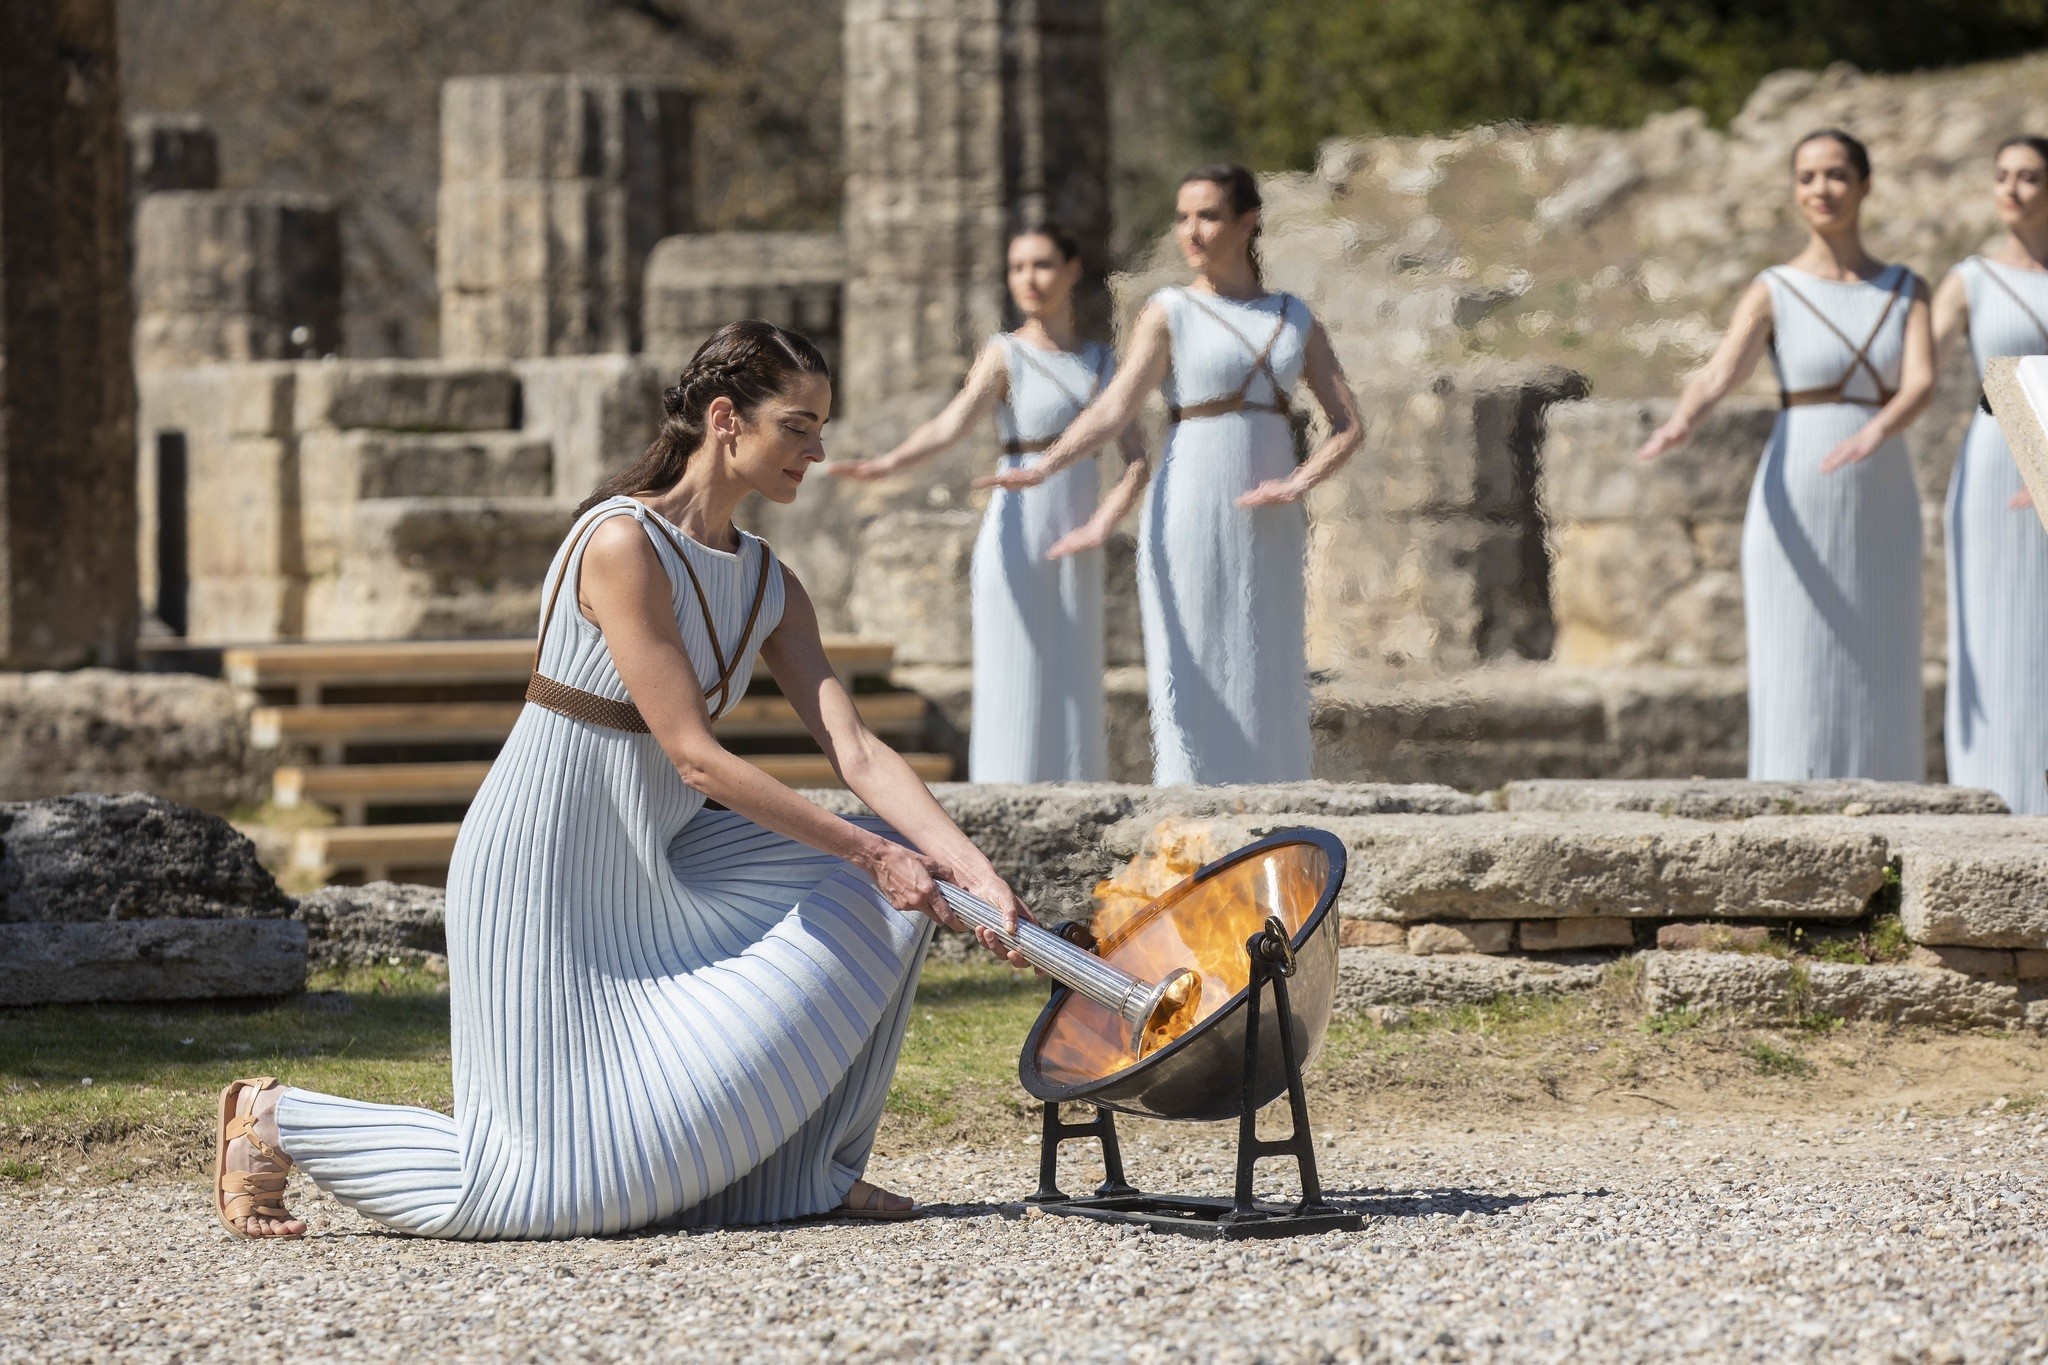 Mito o realidad ¿Los juegos en la Antigua Grecia se realizaban sin ropa? |  MVS Noticias